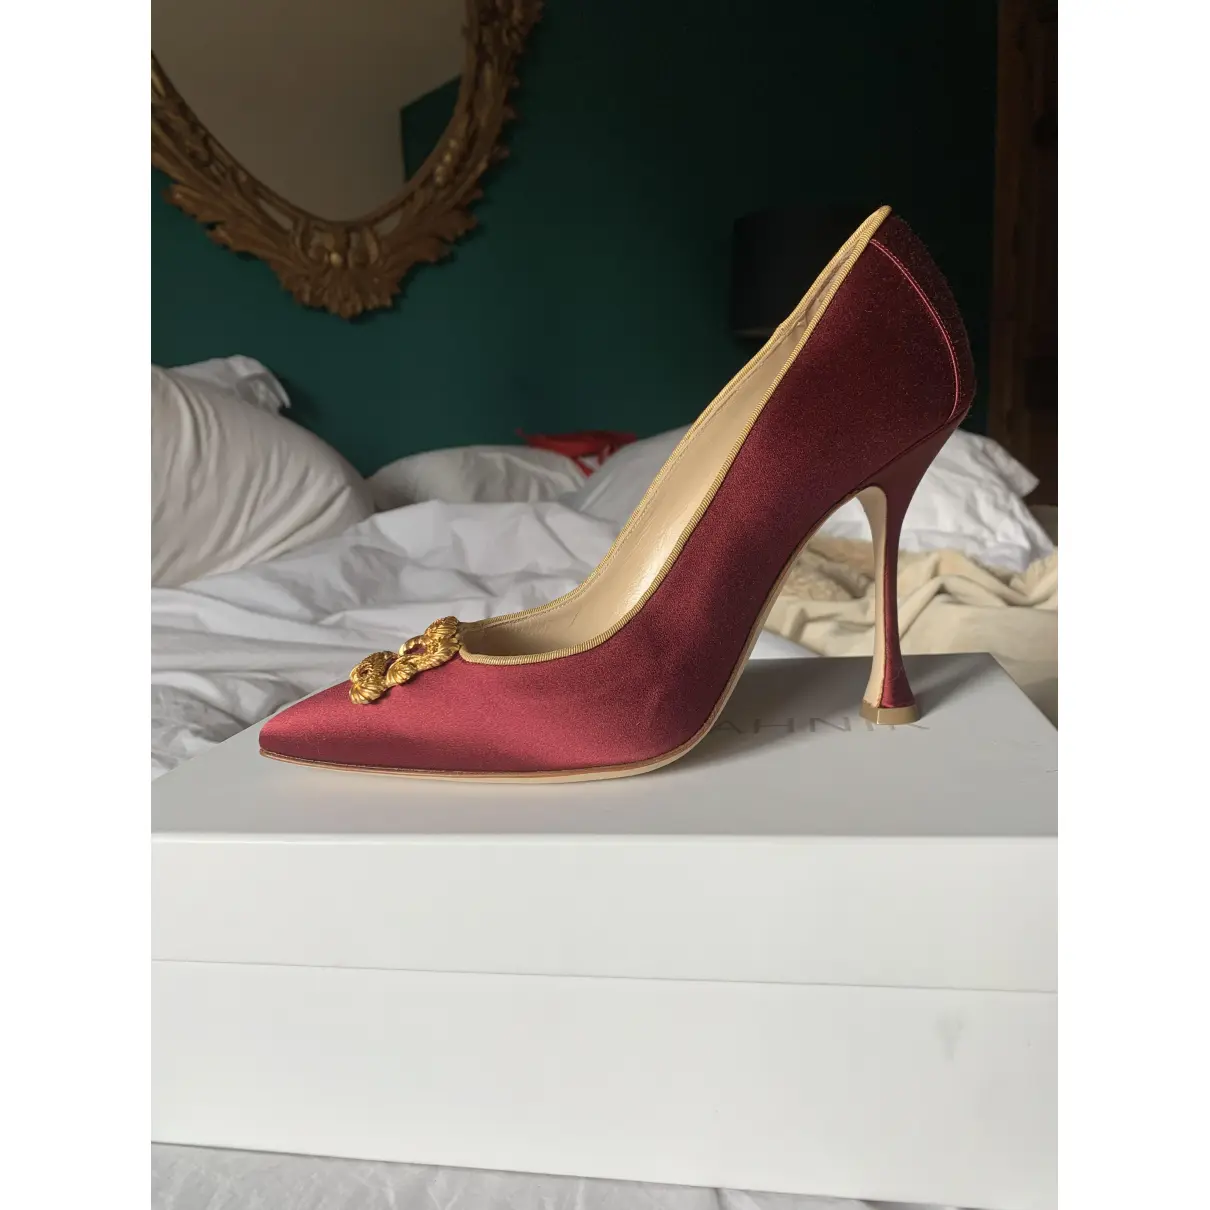 Buy Manolo Blahnik Cloth heels online